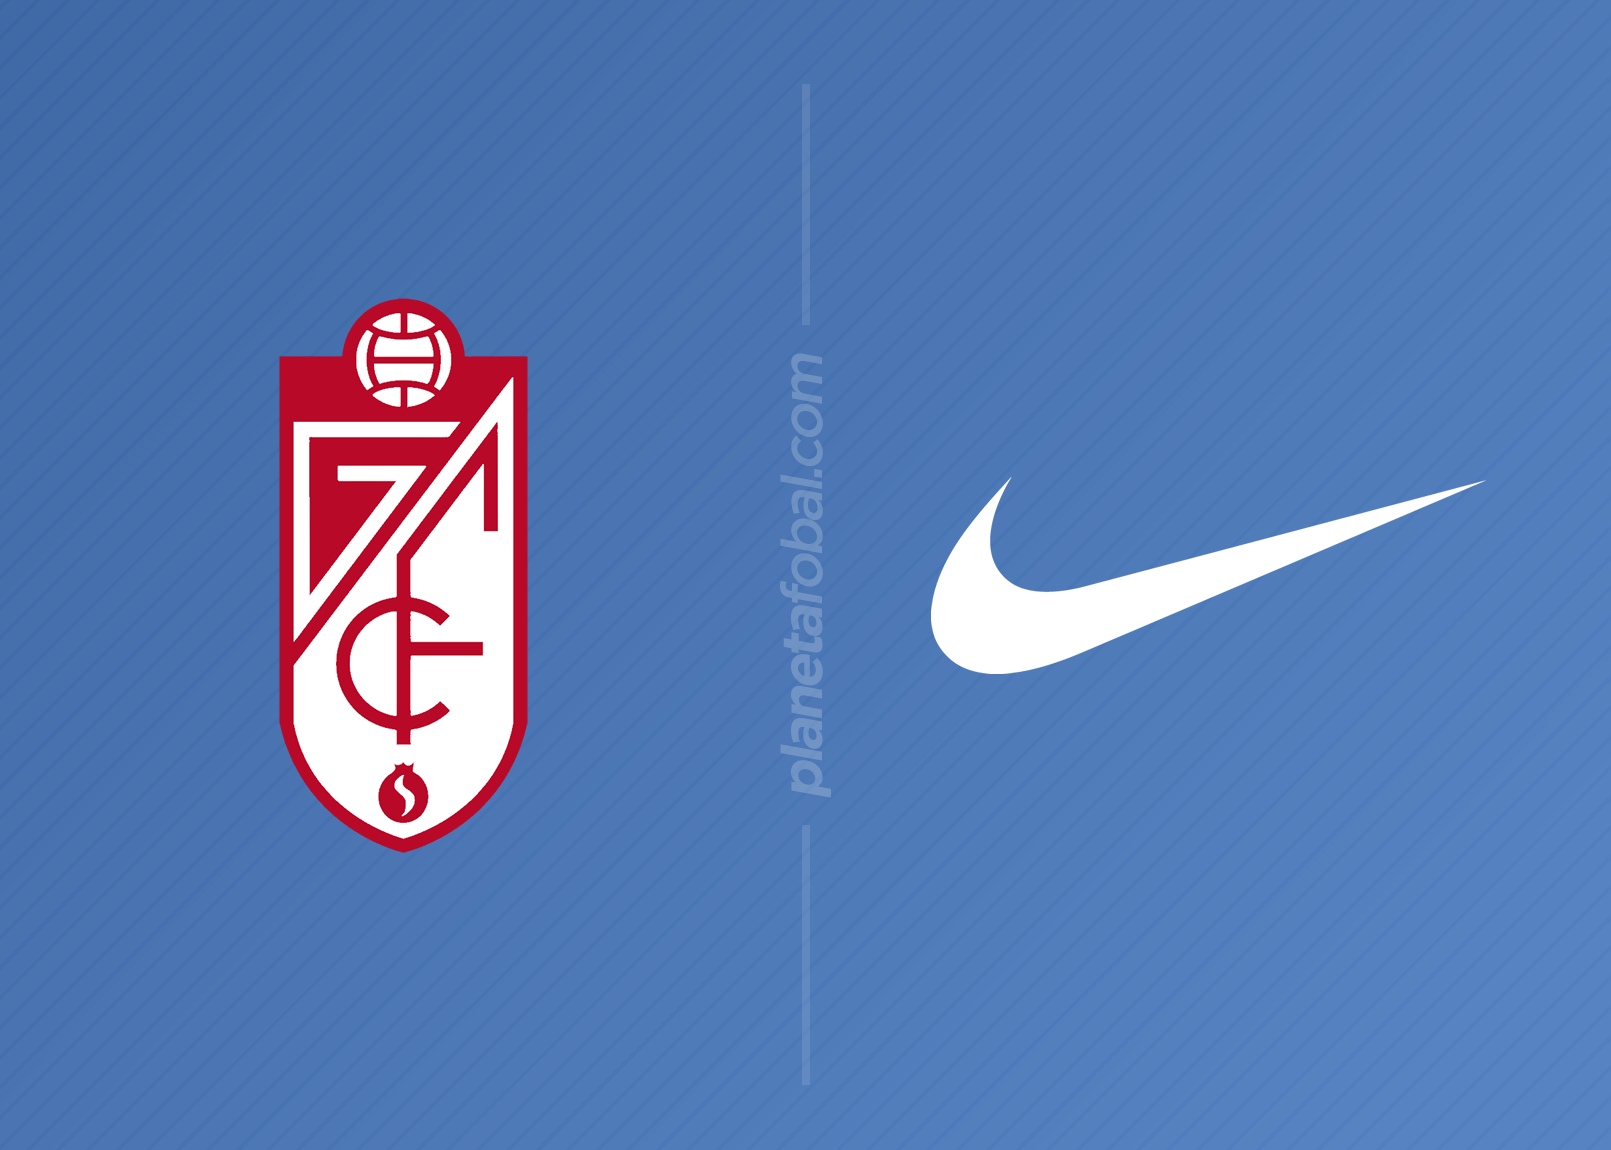 Granada CF anuncia a Nike como nuevo sponsor técnico